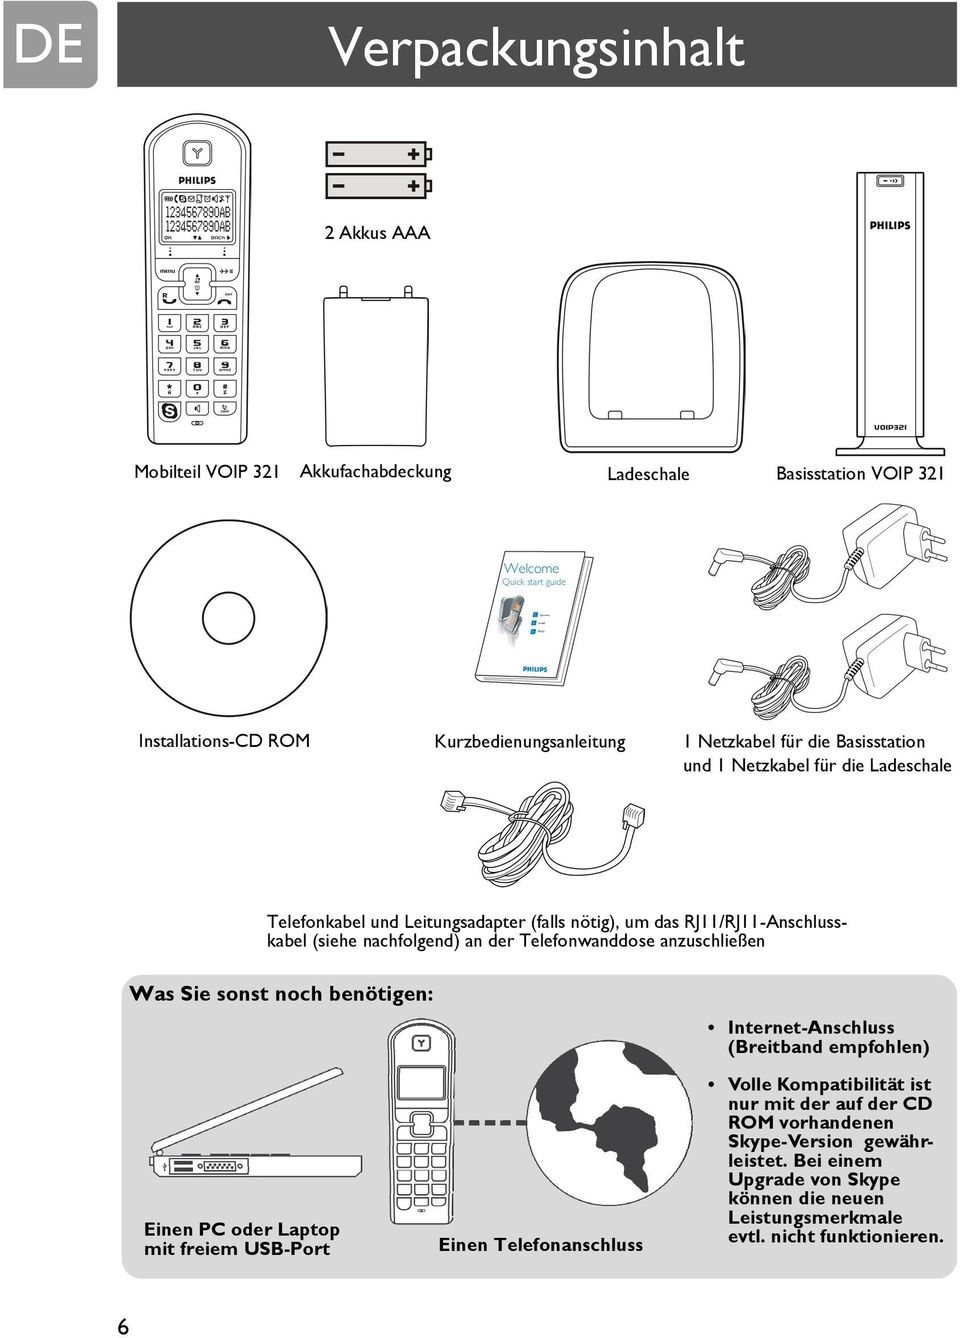 nachfolgend) an der Telefonwanddose anzuschließen Was Sie sonst noch benötigen: Einen PC oder Laptop mit freiem USB-Port Einen Telefonanschluss Internet-Anschluss (Breitband